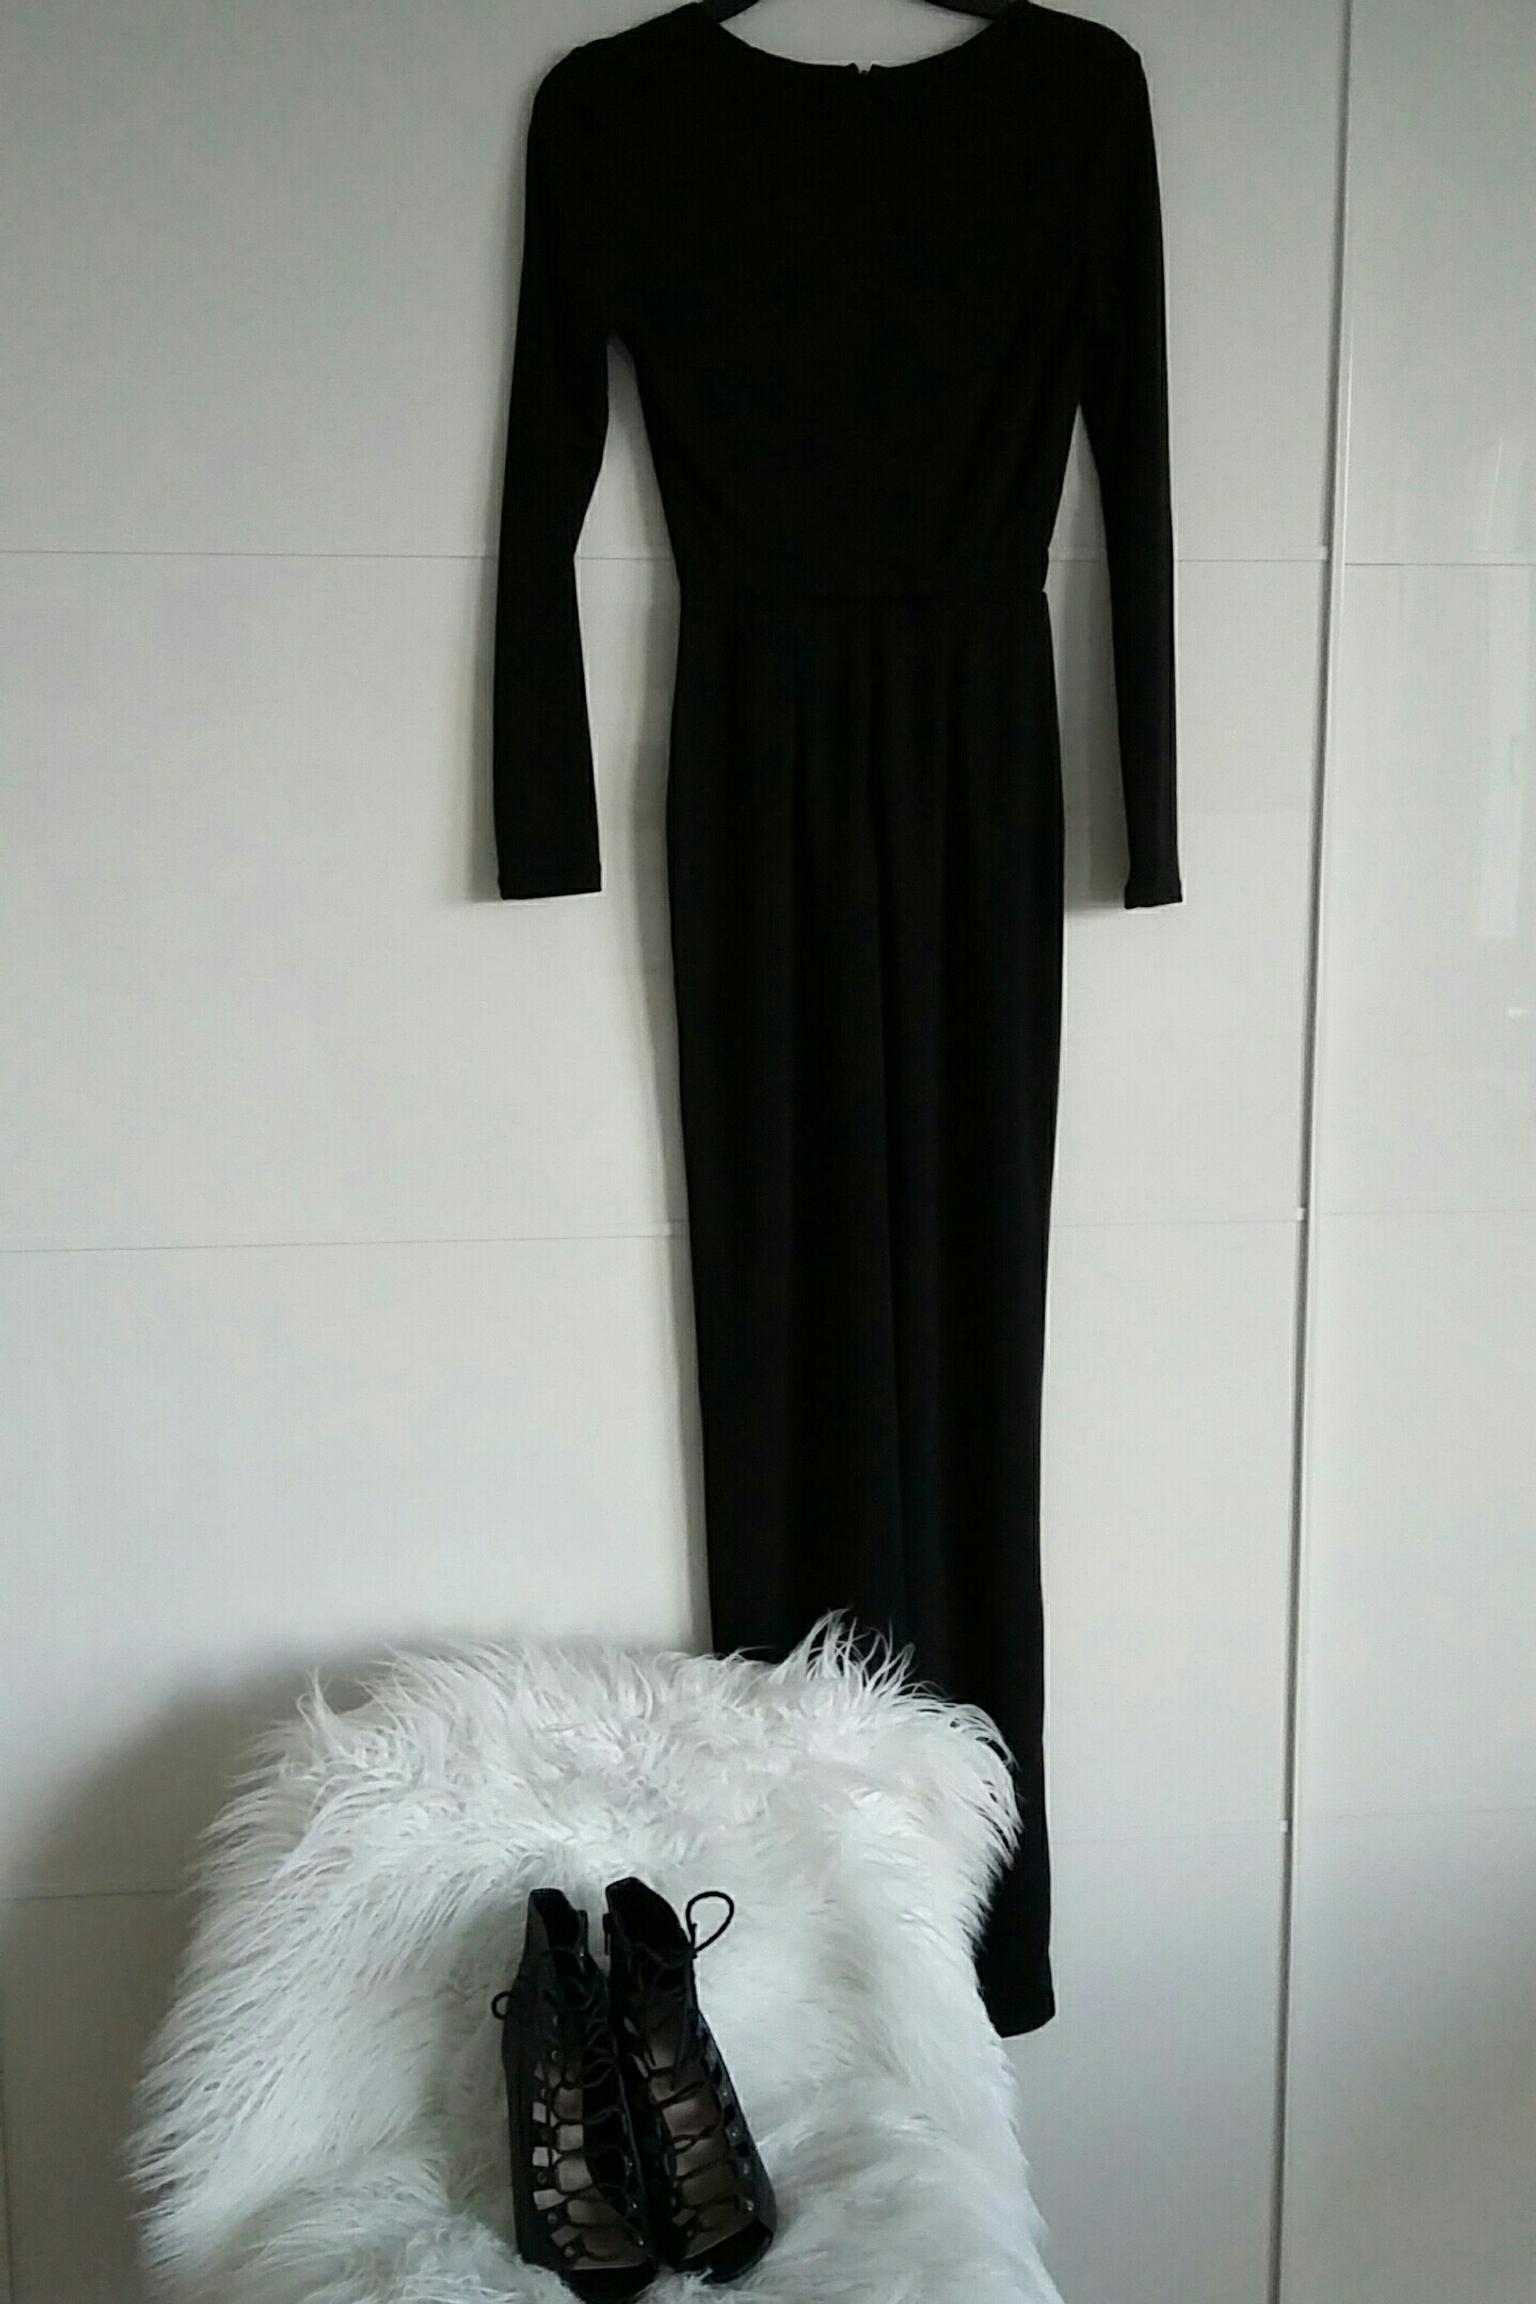 Kleid Lang Elegant Edel H M Schwarz Xs 34 In 82110 Germering For 15 00 For Sale Shpock